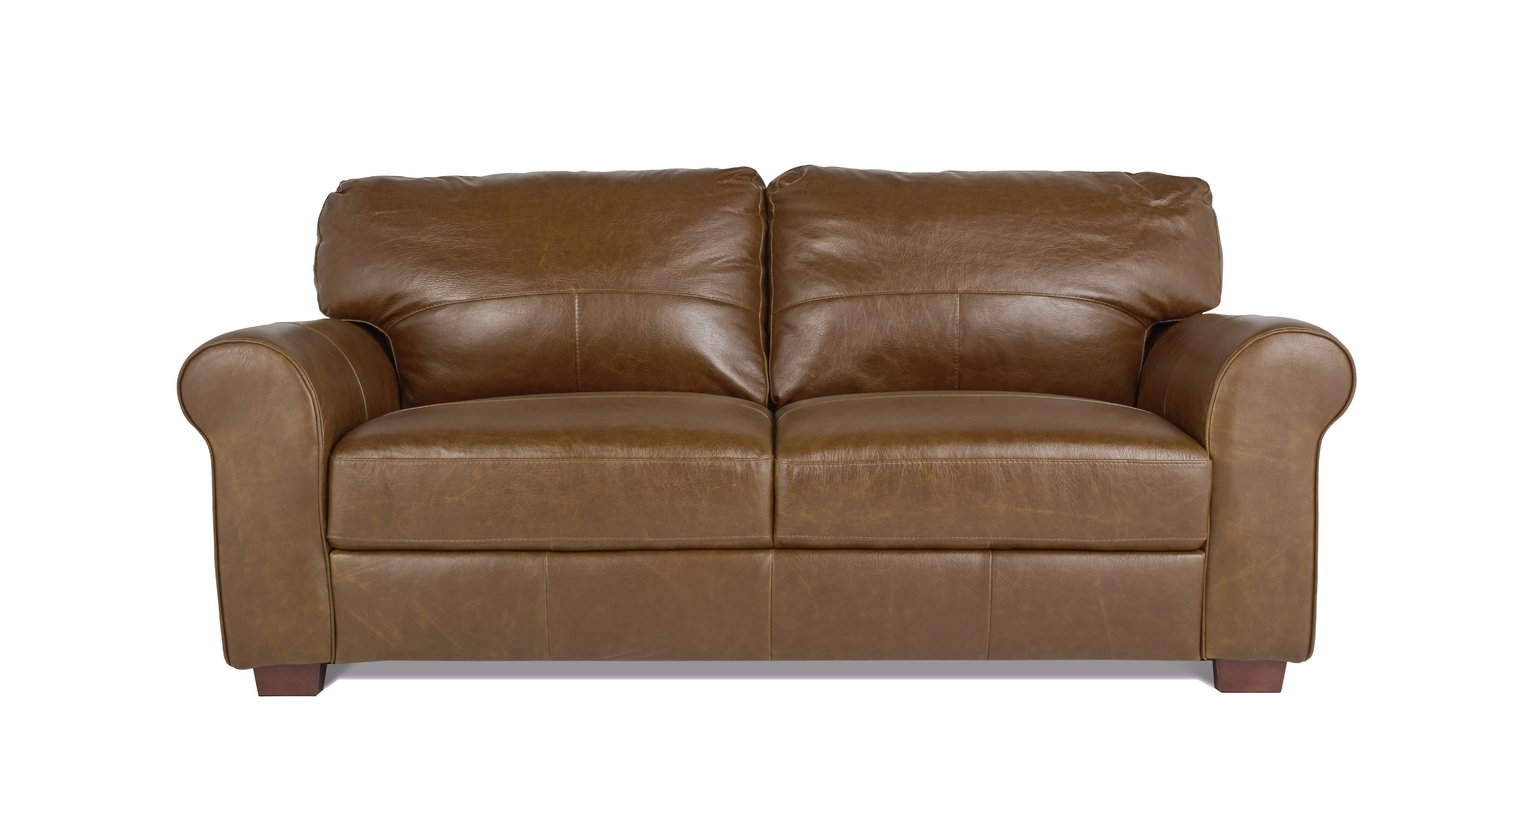 Argos Home Salisbury 3 Seater Leather Sofa - Tan (3596449) | Argos